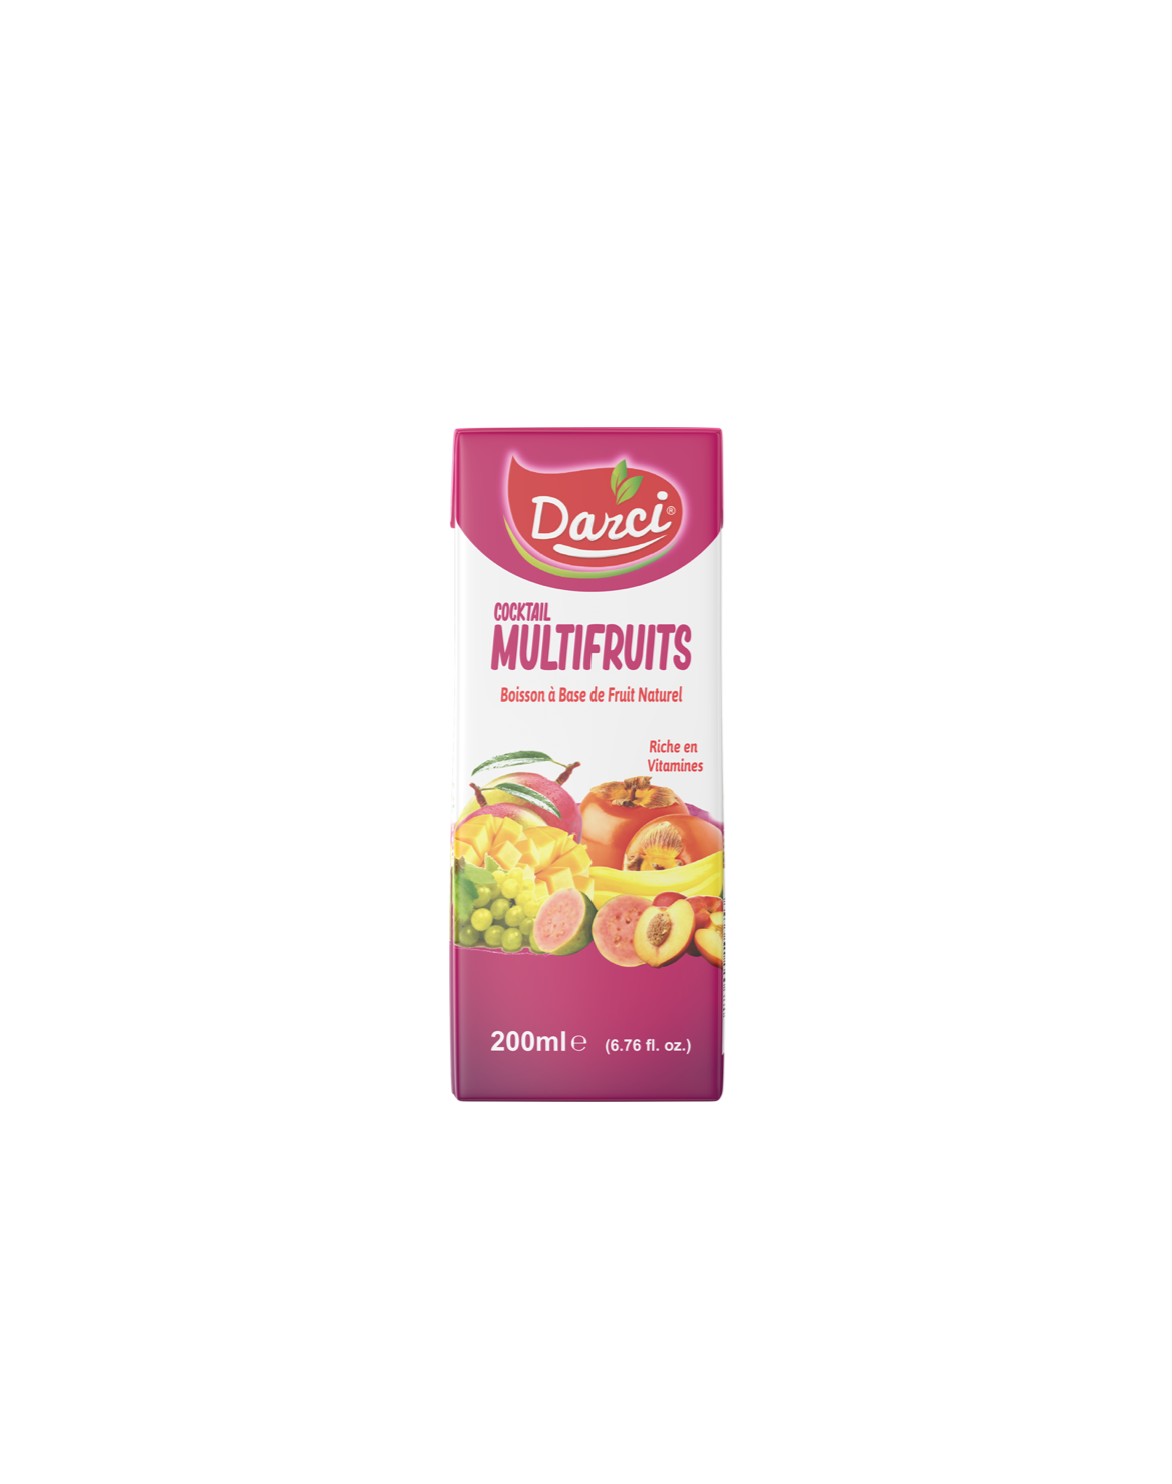 Boisson-DARCI-Multifruits-200ml_siprochim